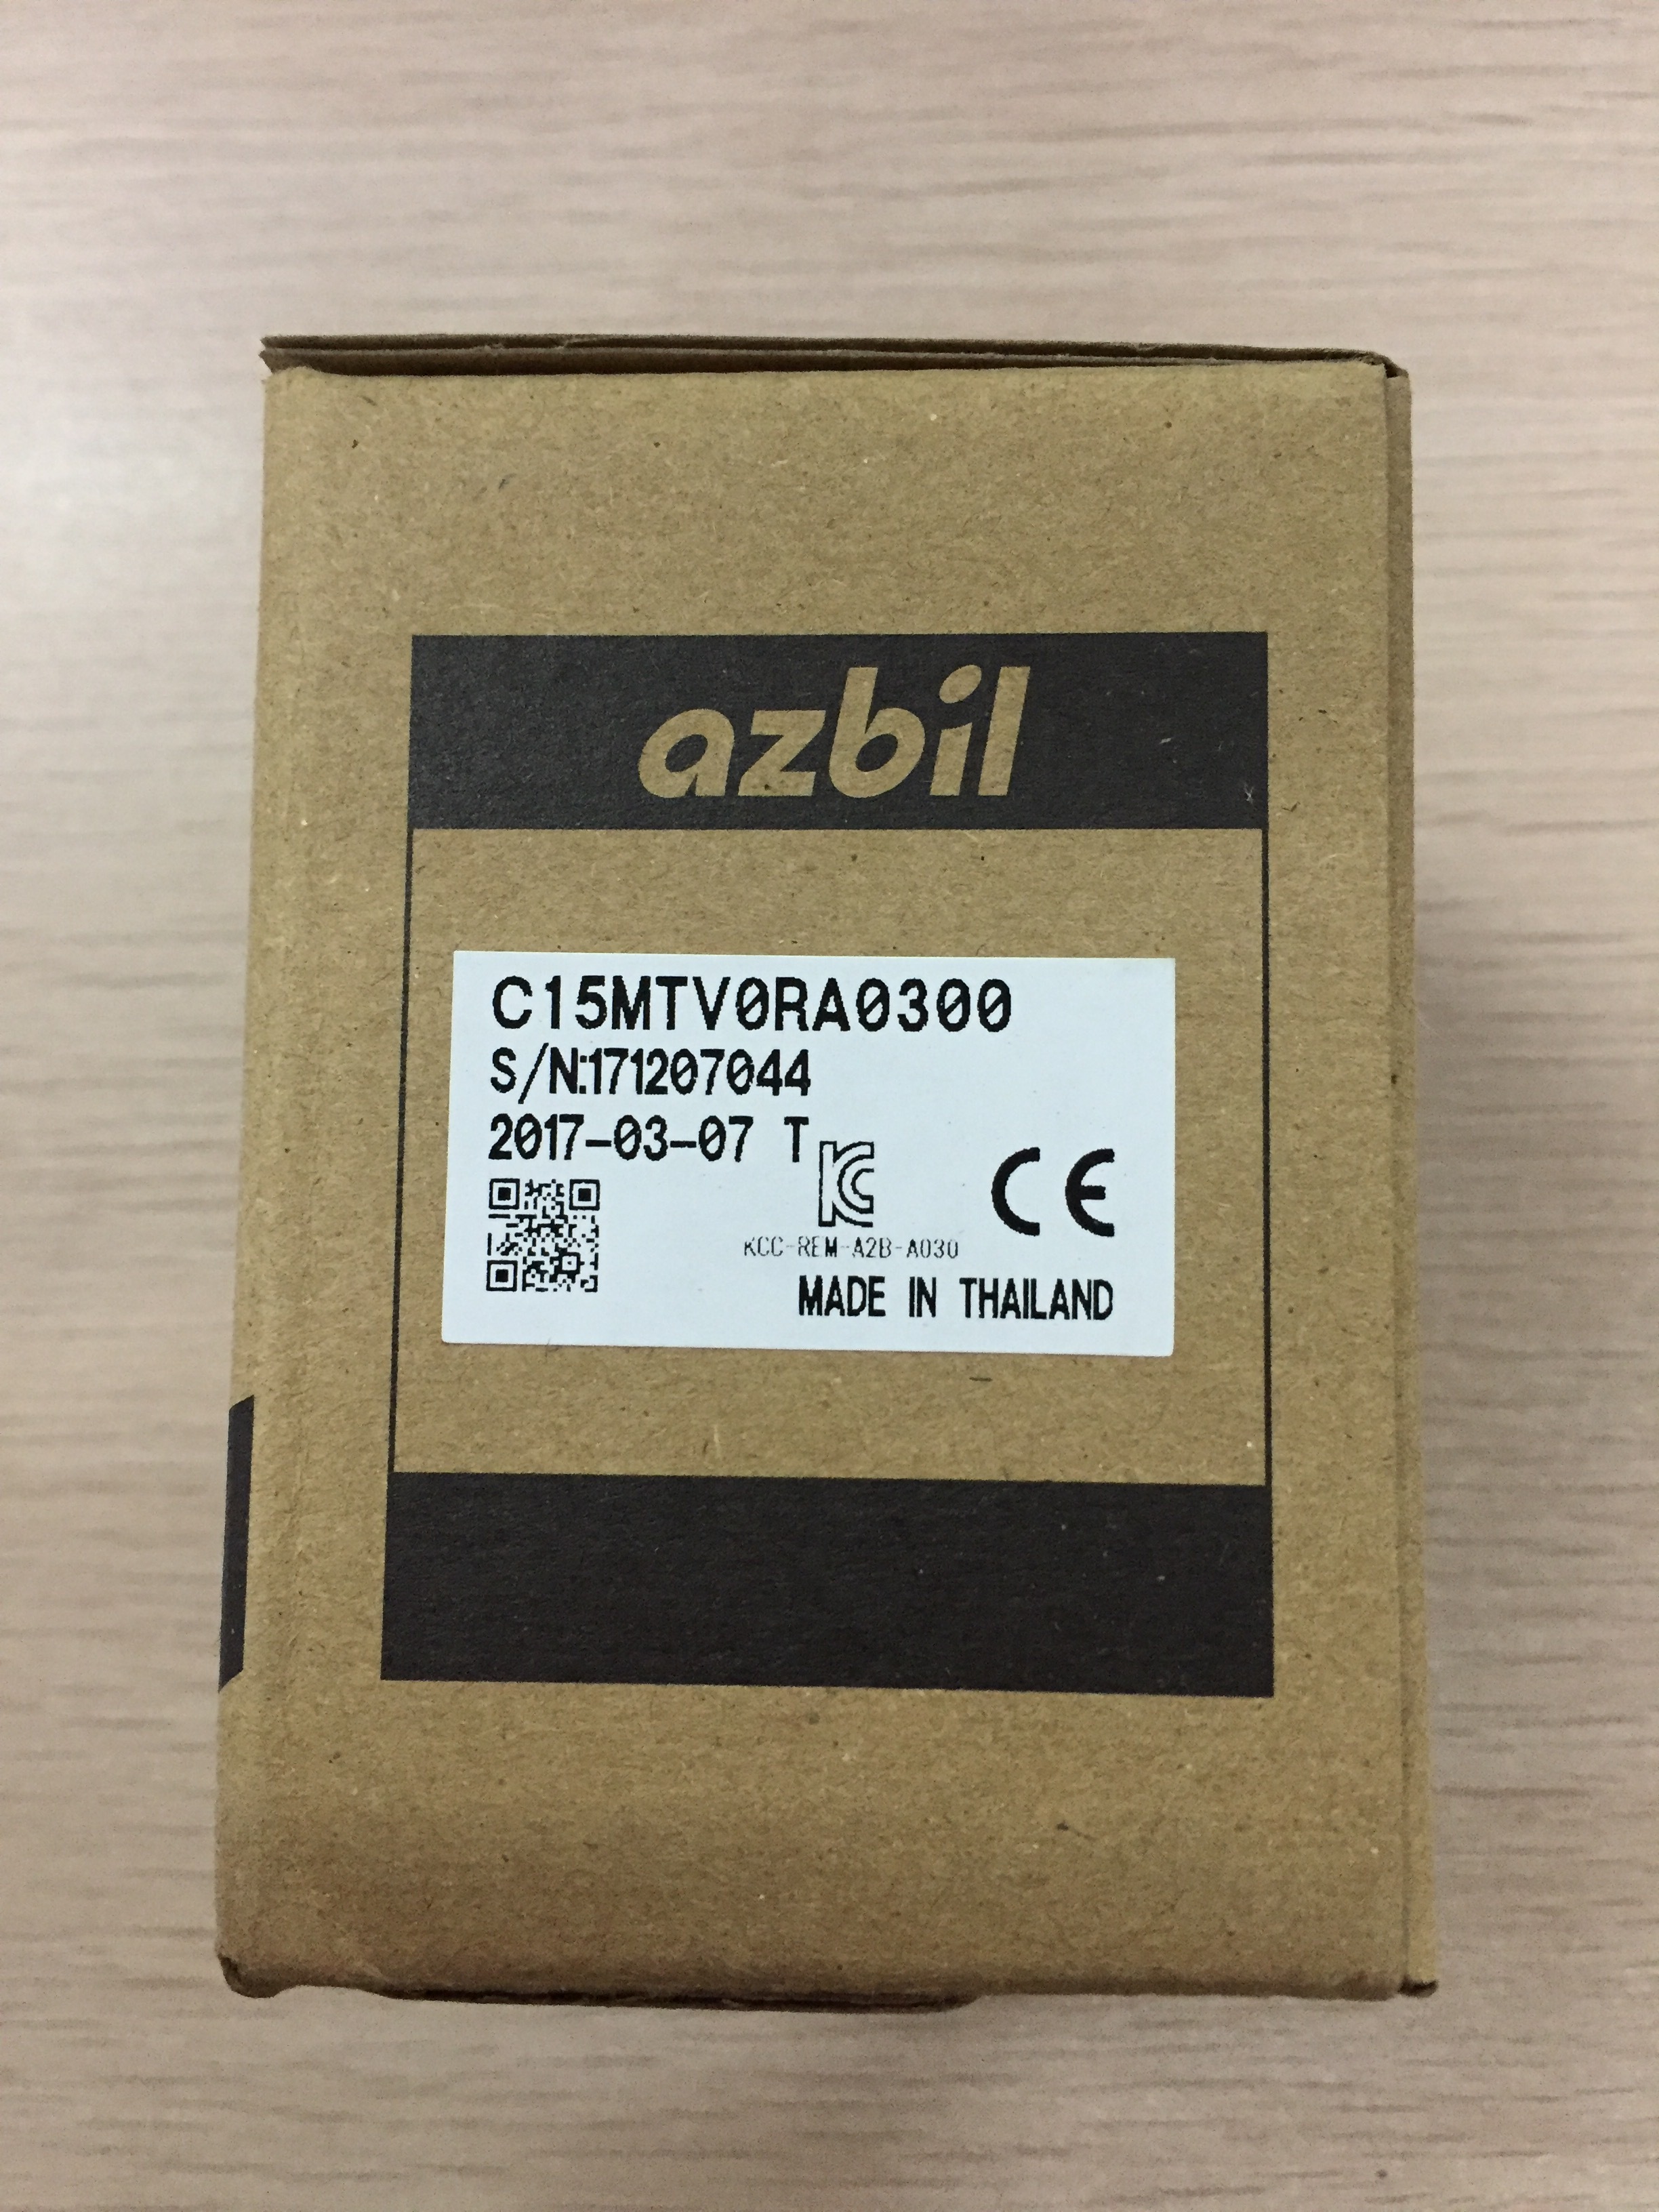 山武-azbil-C15MTV0RA0300-温度控制器